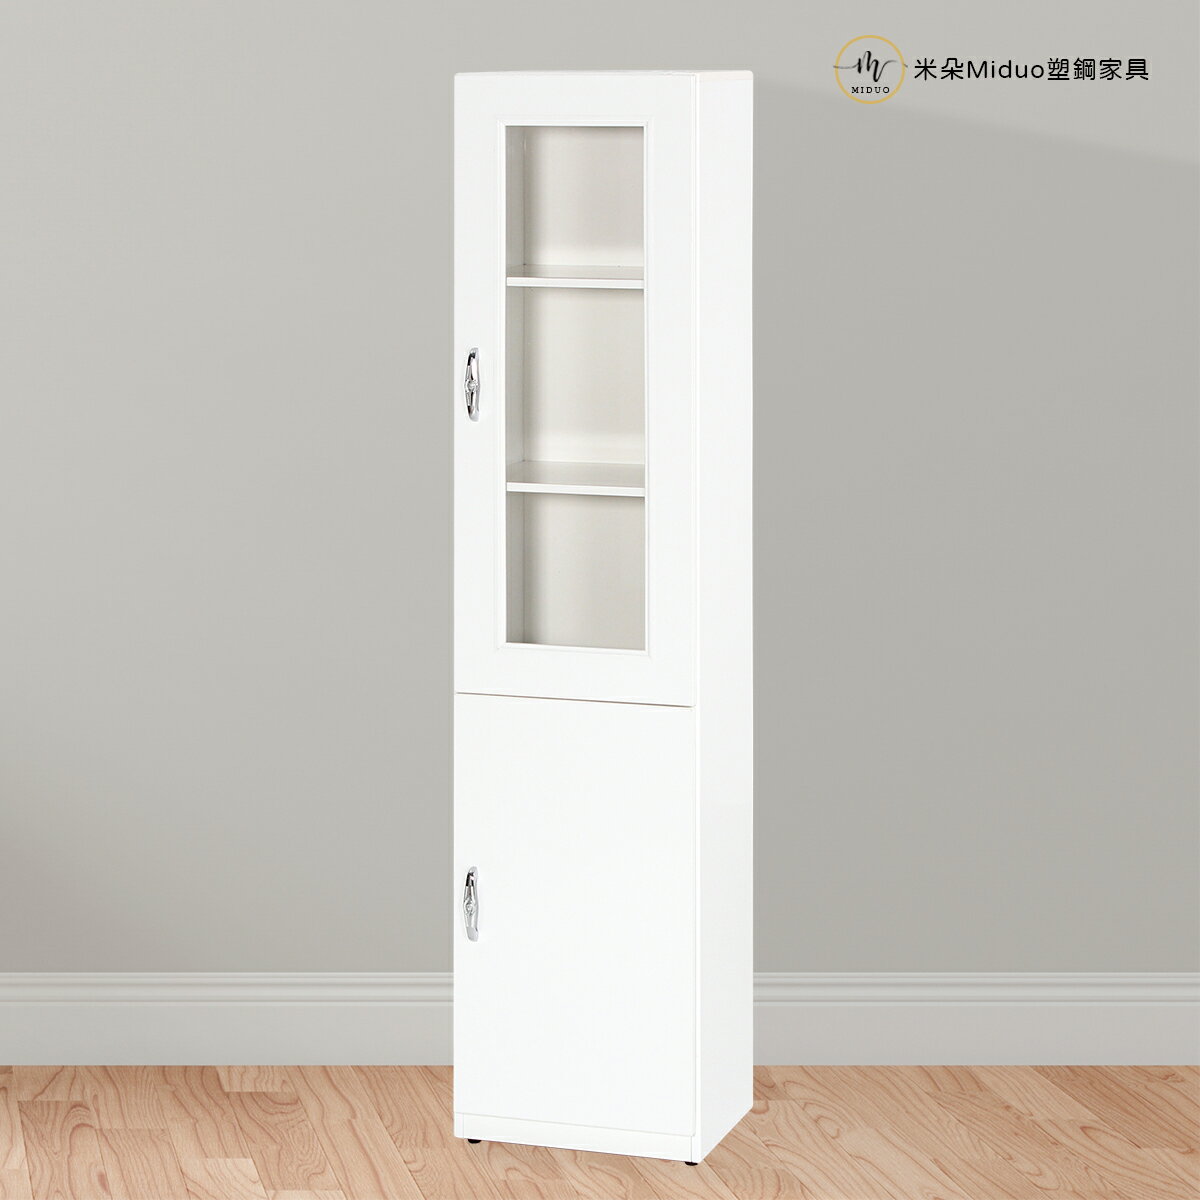 1.3尺兩門塑鋼書櫃 置物櫃 防水塑鋼家具【米朵Miduo】